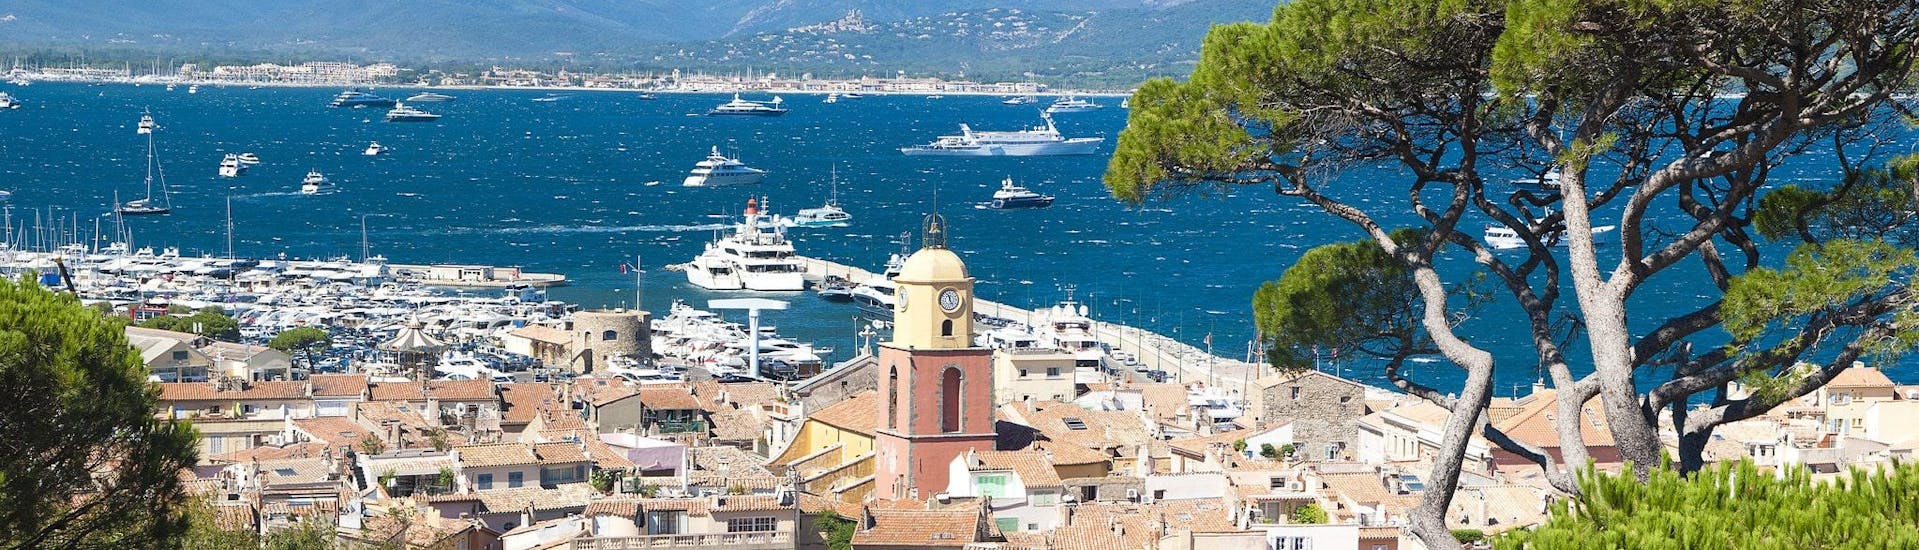 Blick auf den Hafen von Saint-Tropez, der ein beliebter Ausgangspunkt für Bootstouren entlang der Côte d'Azur ist.